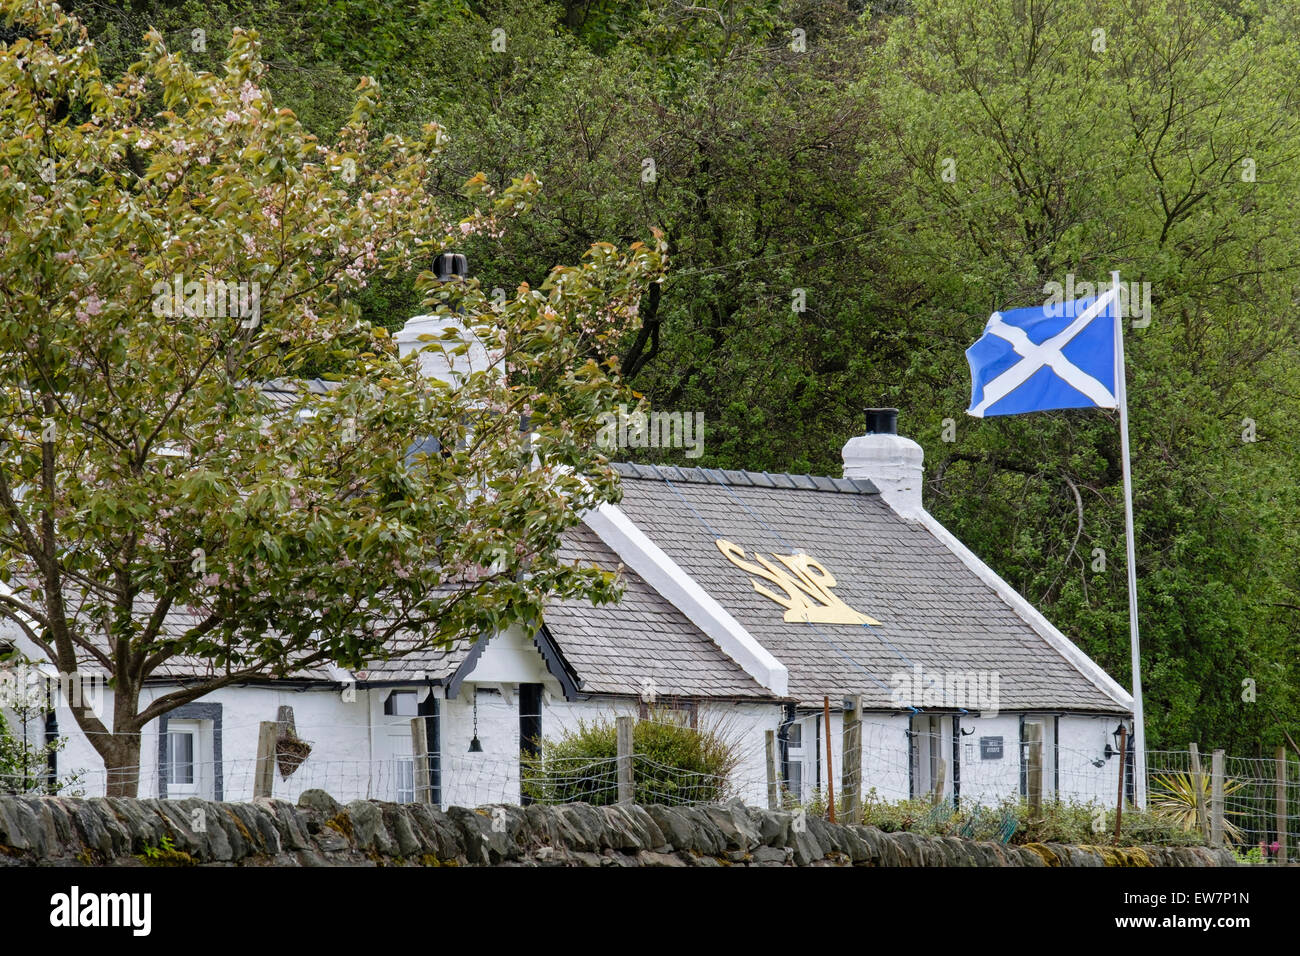 Ferienhaus unterstützen die Scottish National Party mit SNP auf dem Dach und die Flagge. Lochranza, Isle of Arran, Scotland, UK Stockfoto